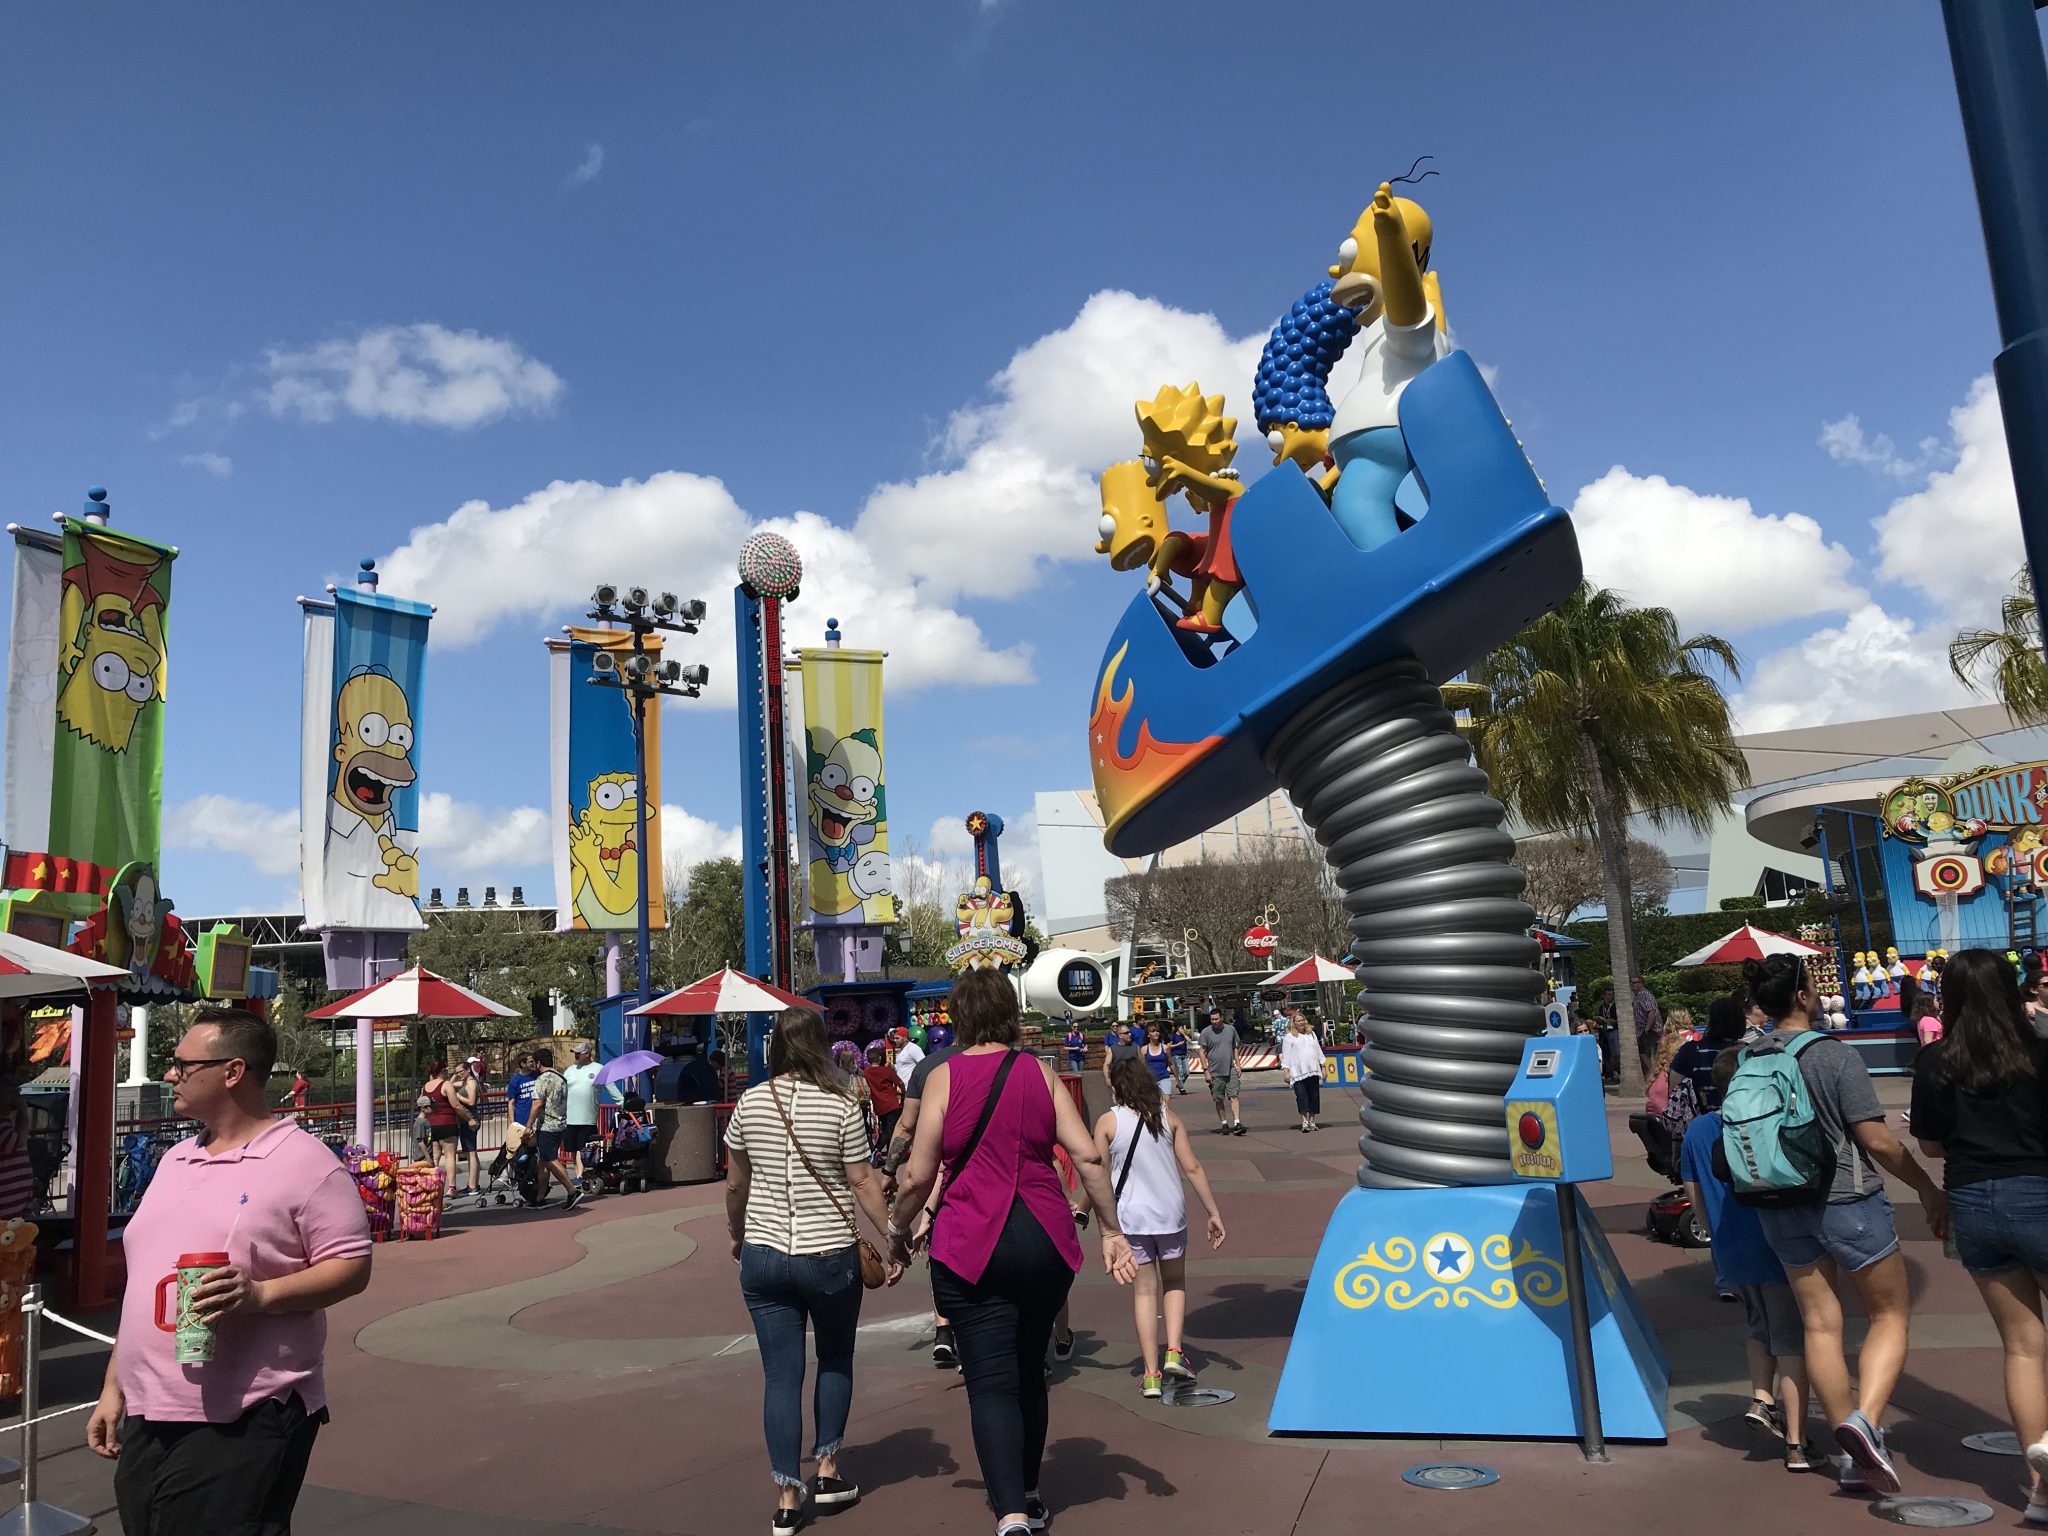 Springfield à Orlando, un espace entièrement dédié aux Simpson. Photo : Publicité/Fernanda De Rosa